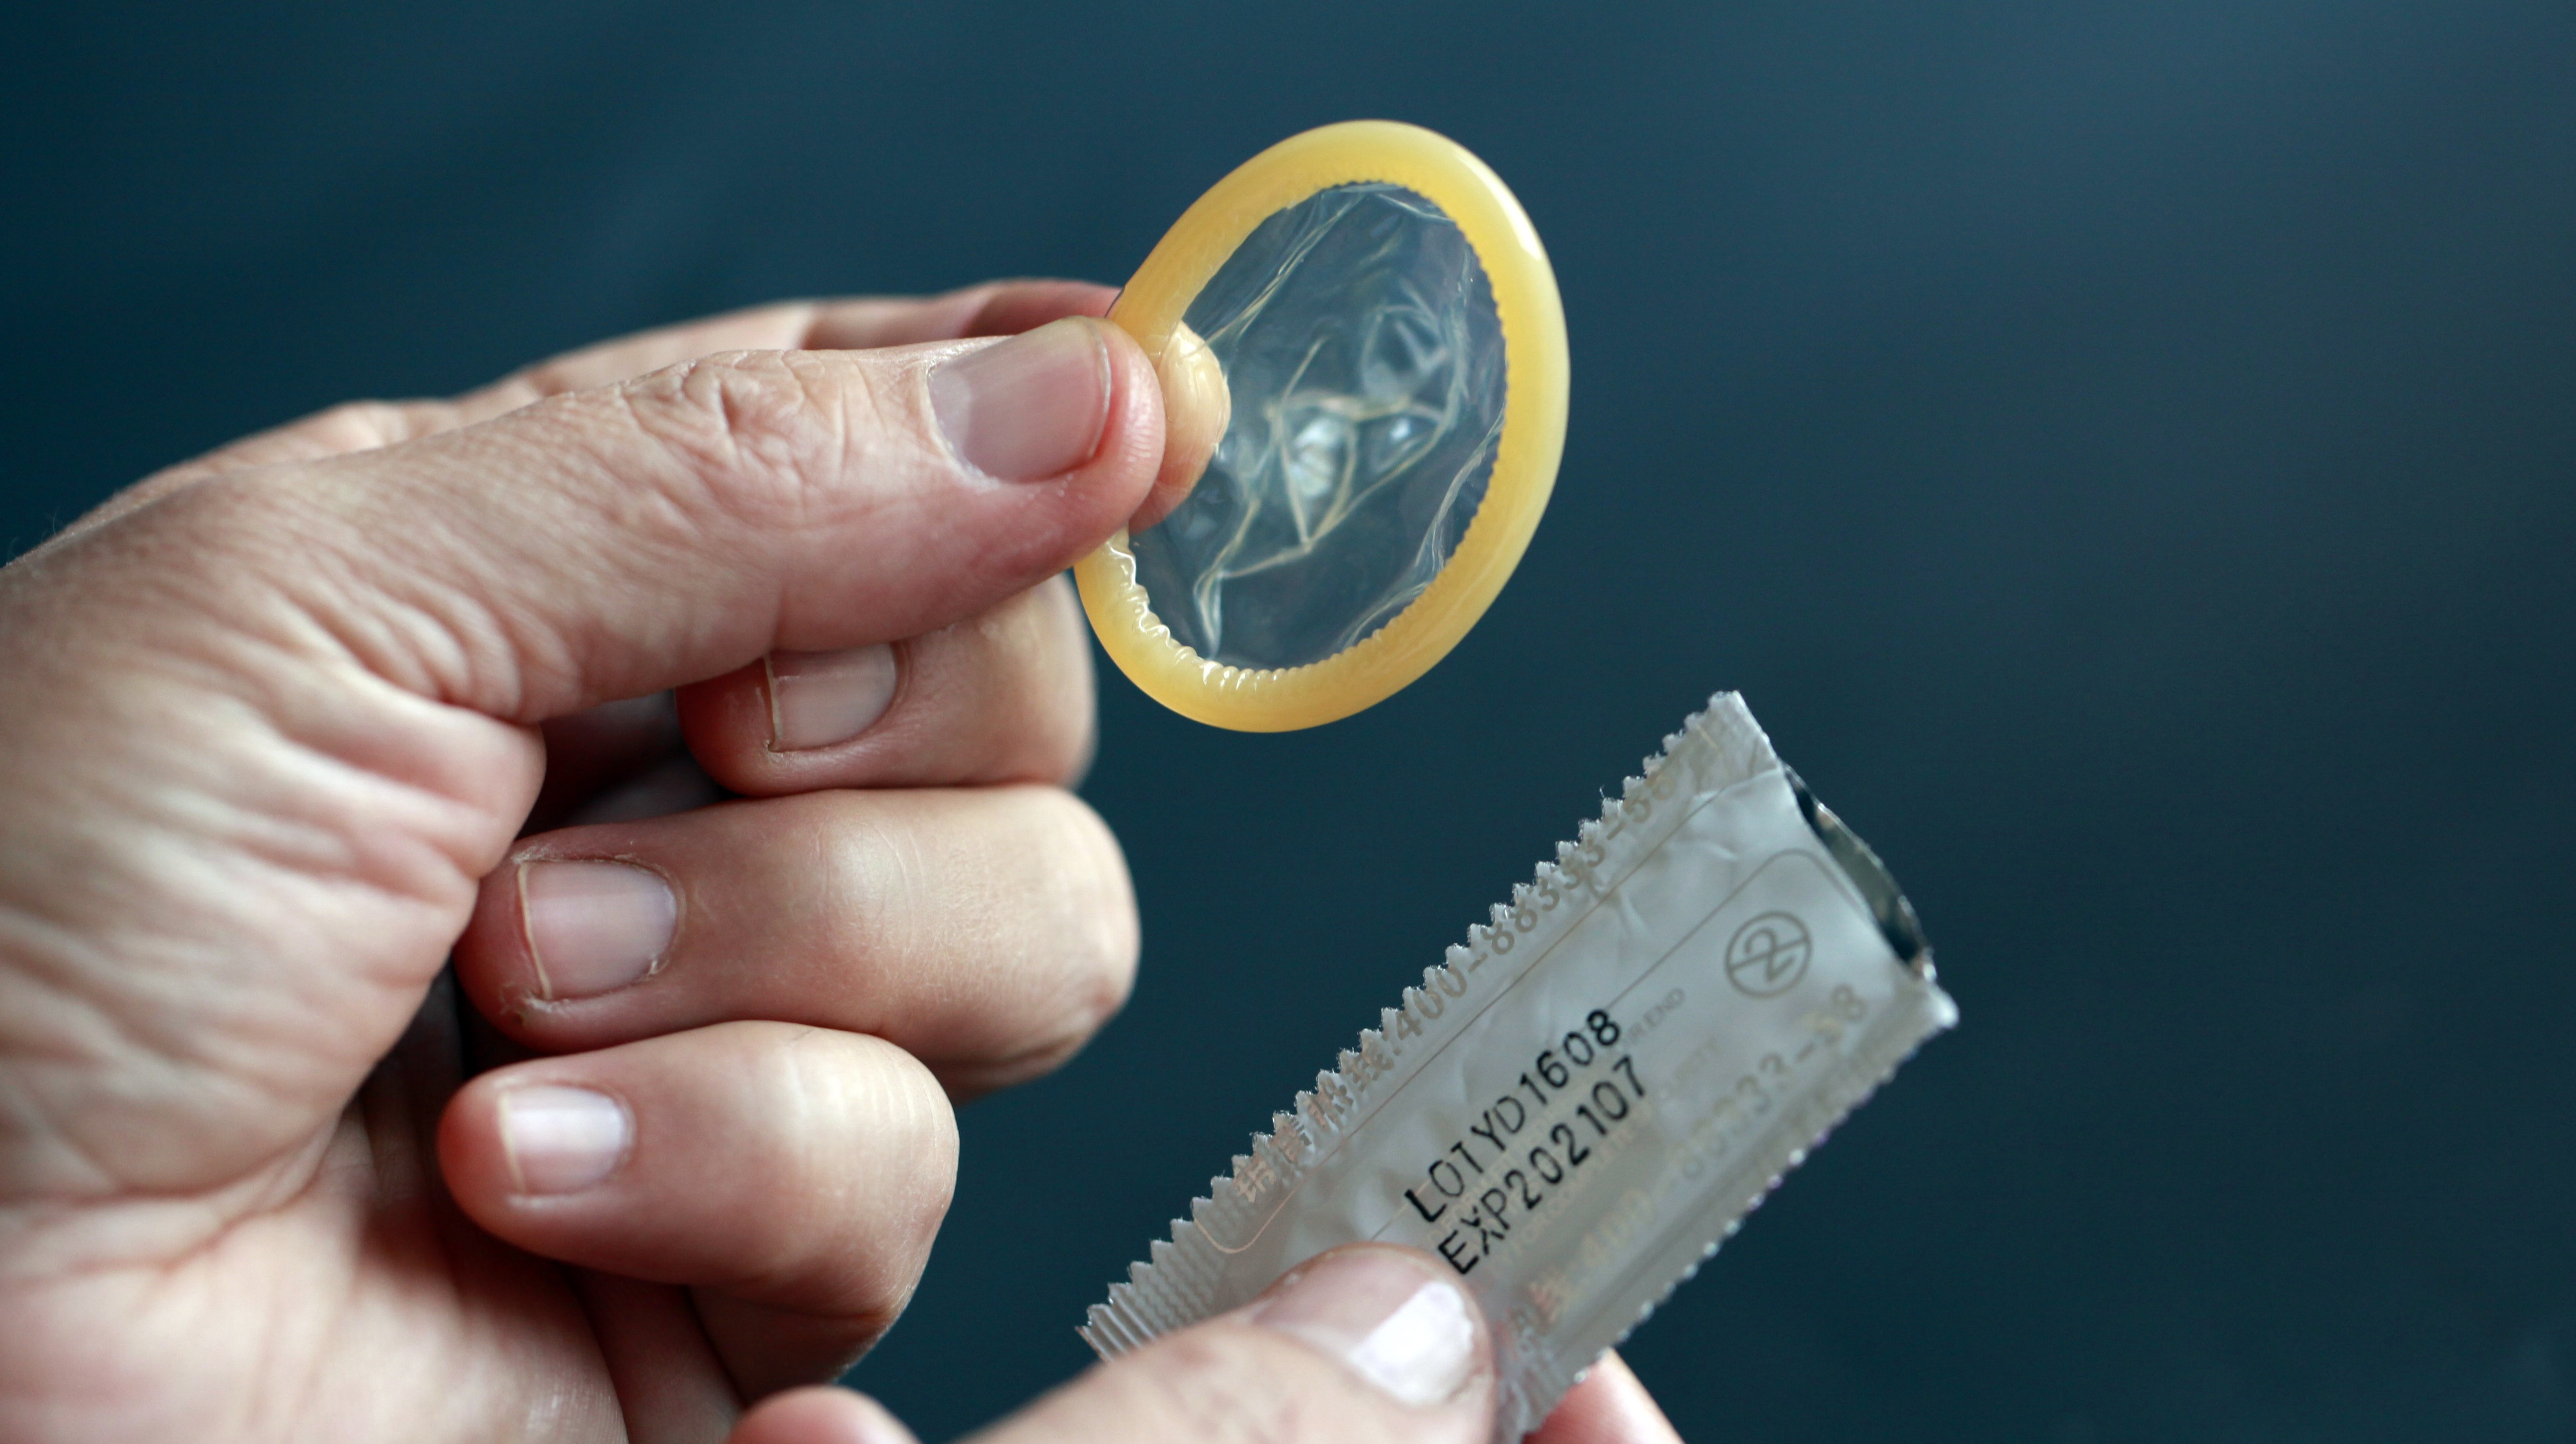 男性避孕针将面世,到底让谁不舒服了?